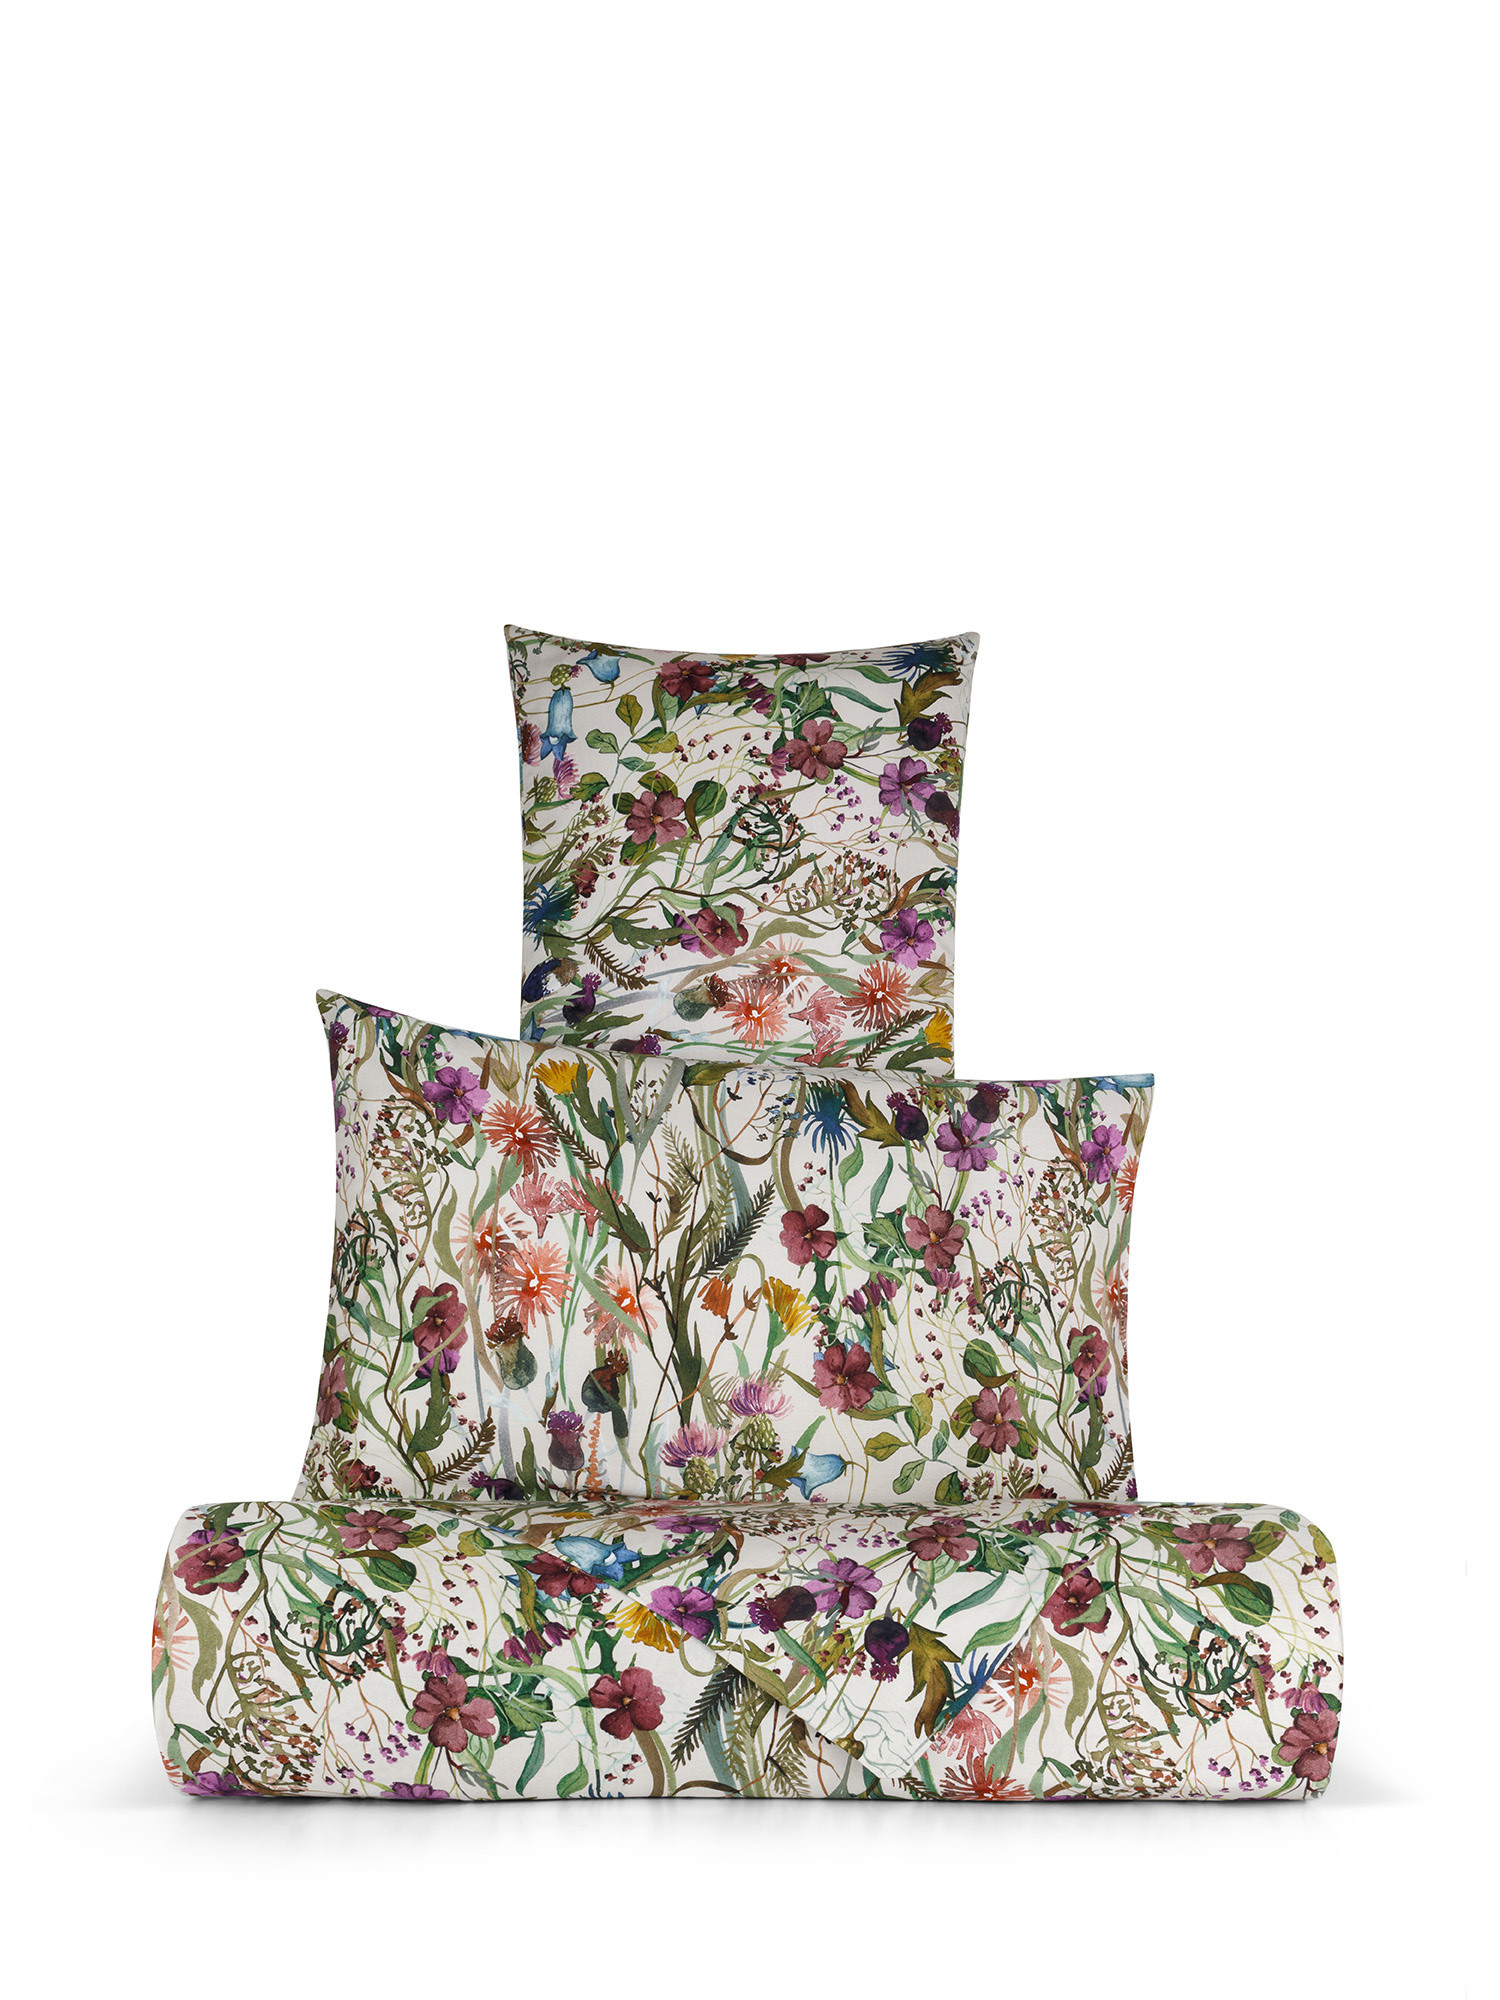 Floral patterned cotton satin duvet cover set, Multicolor, large image number 0